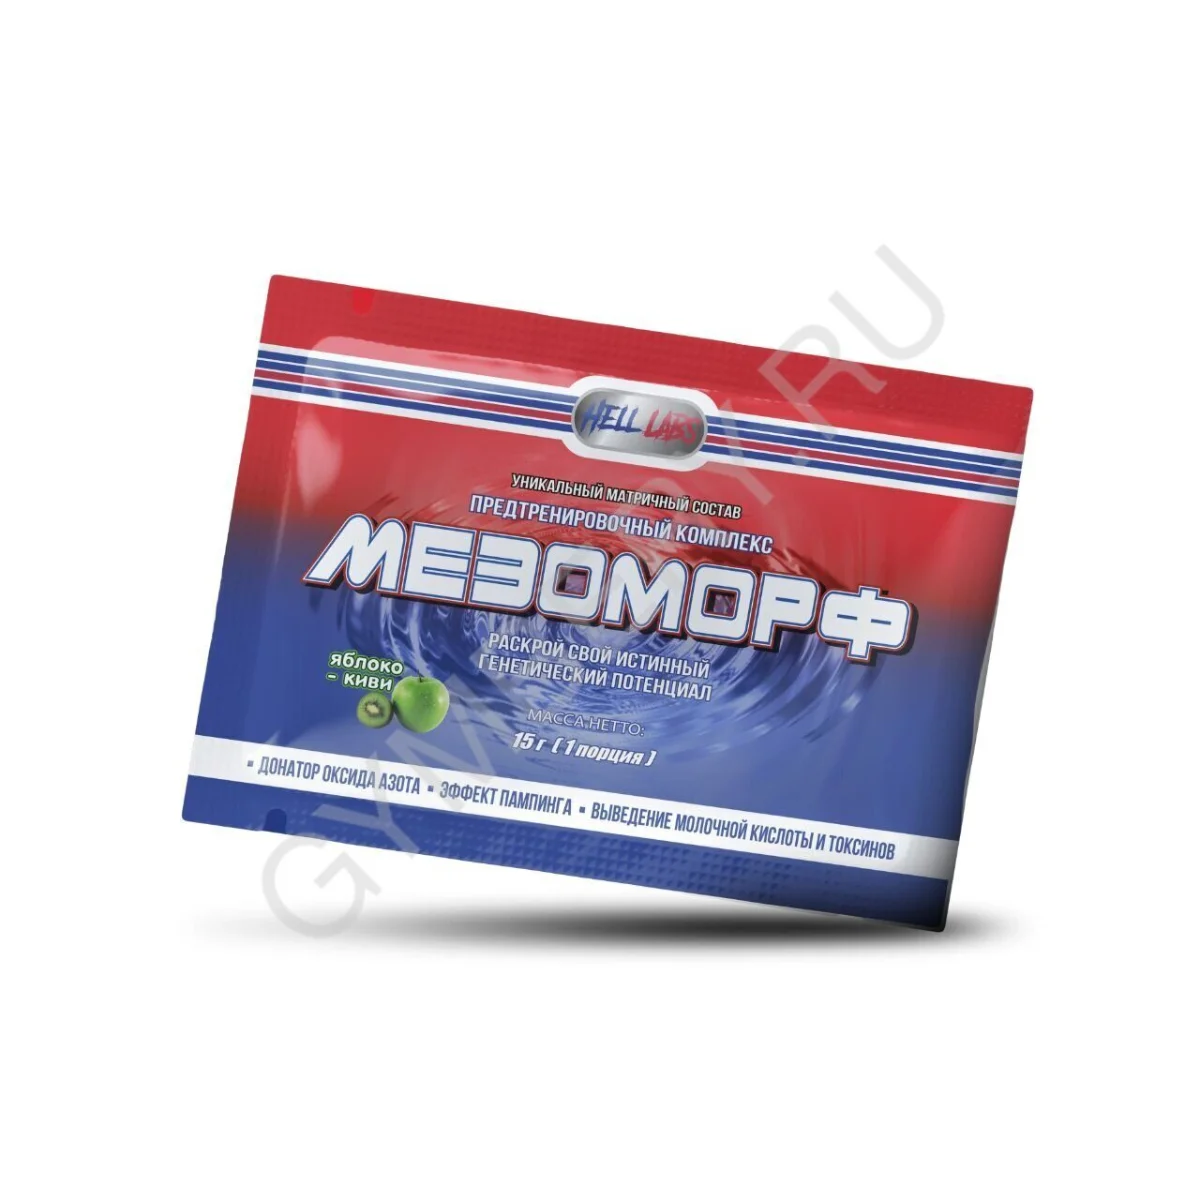 Hell Labs MESOMORPH 15g ПРОБНИК (Разный вкус), шт., арт. 2611016